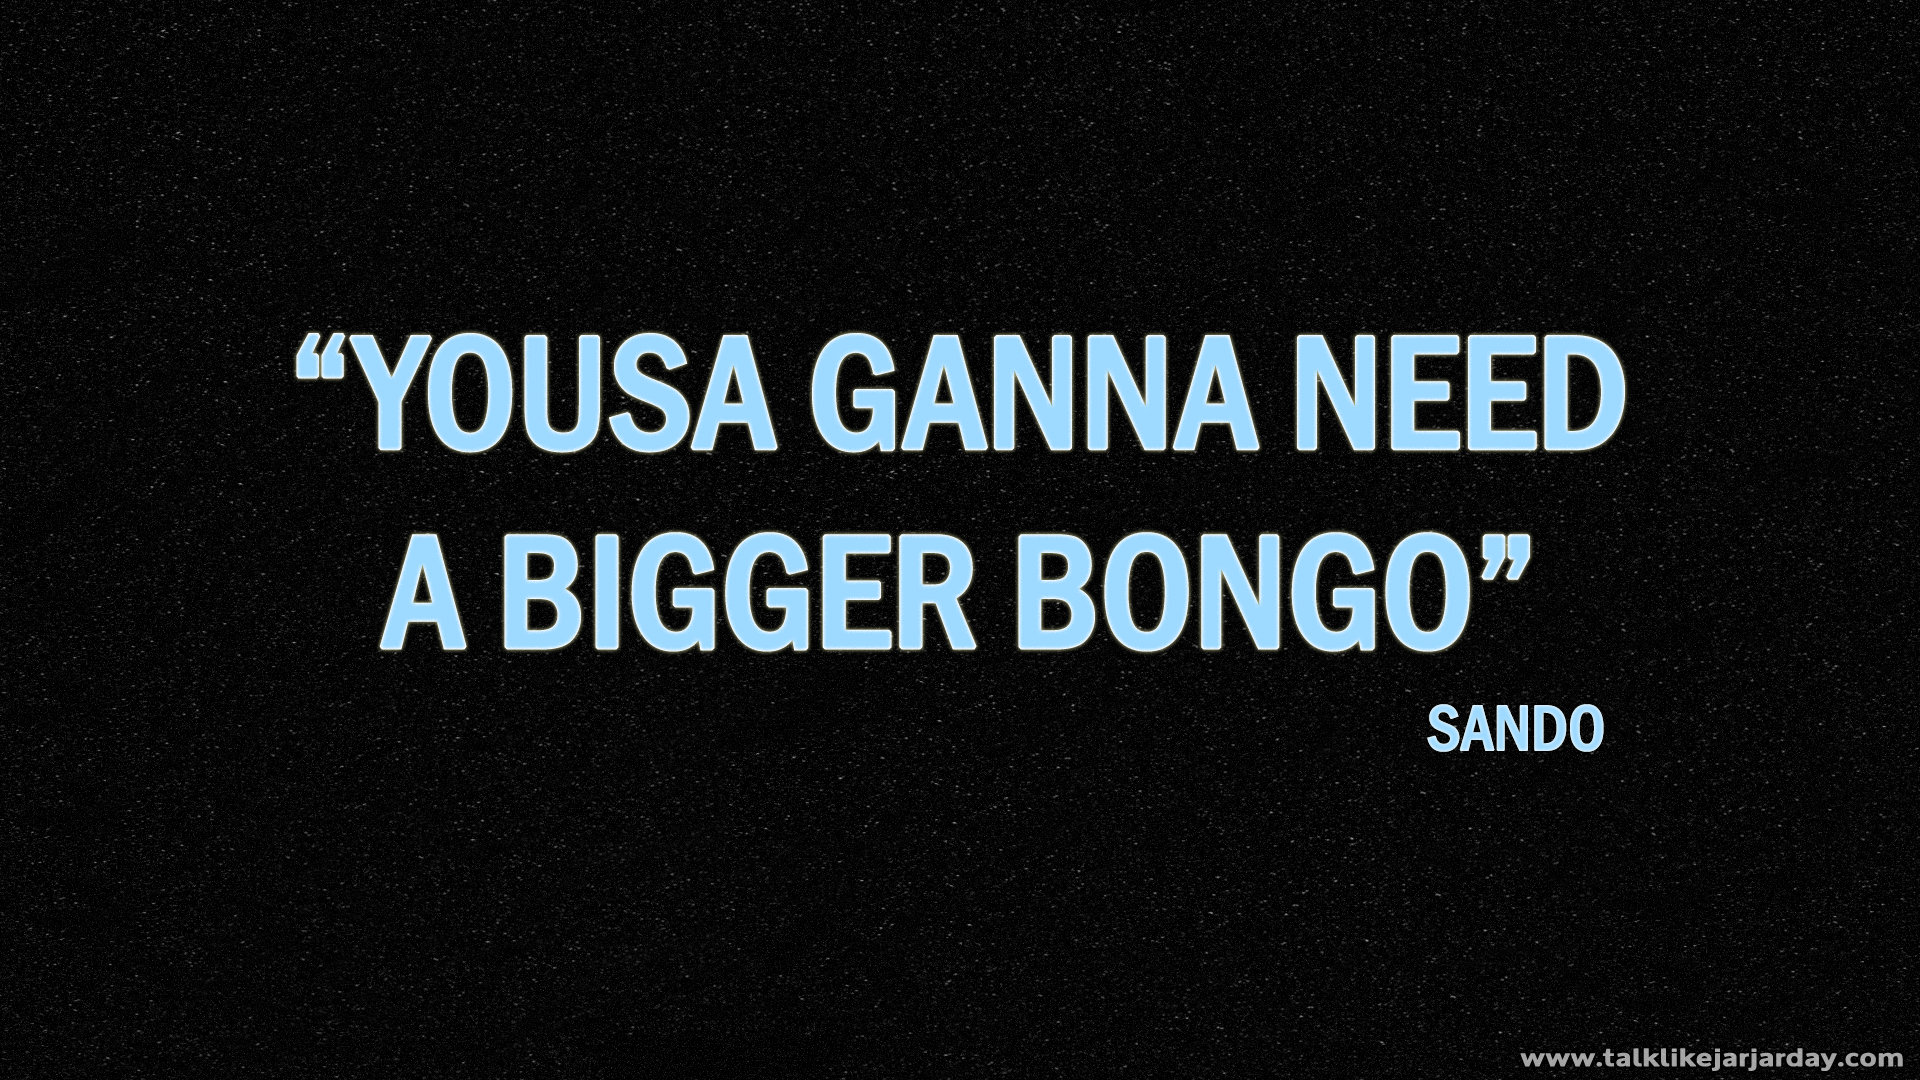 Yousa ganna need a bigger Bongo - Sando